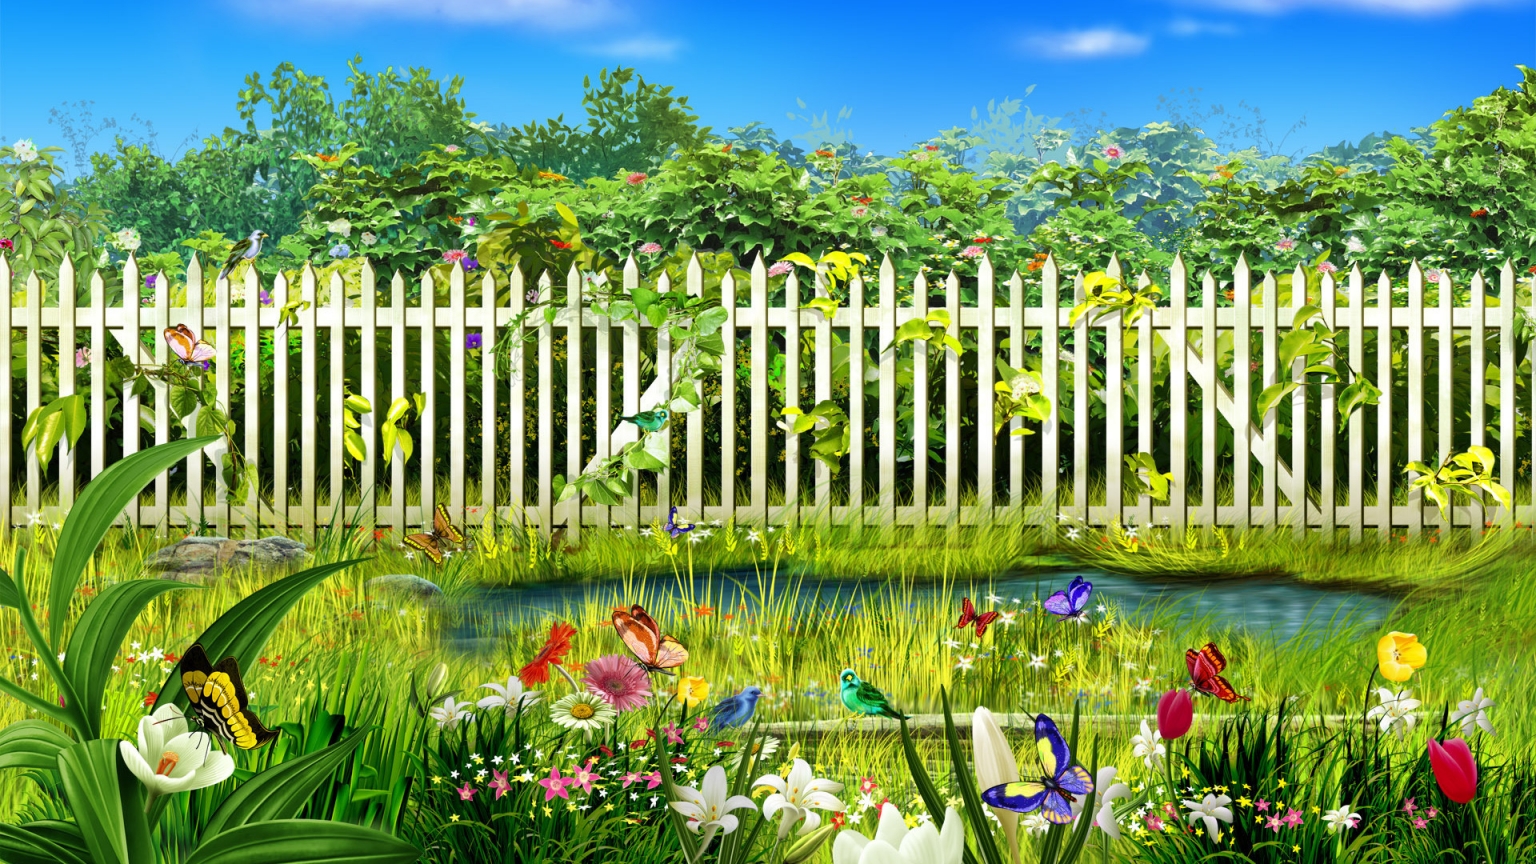 Spring garden for 1536 x 864 HDTV resolution